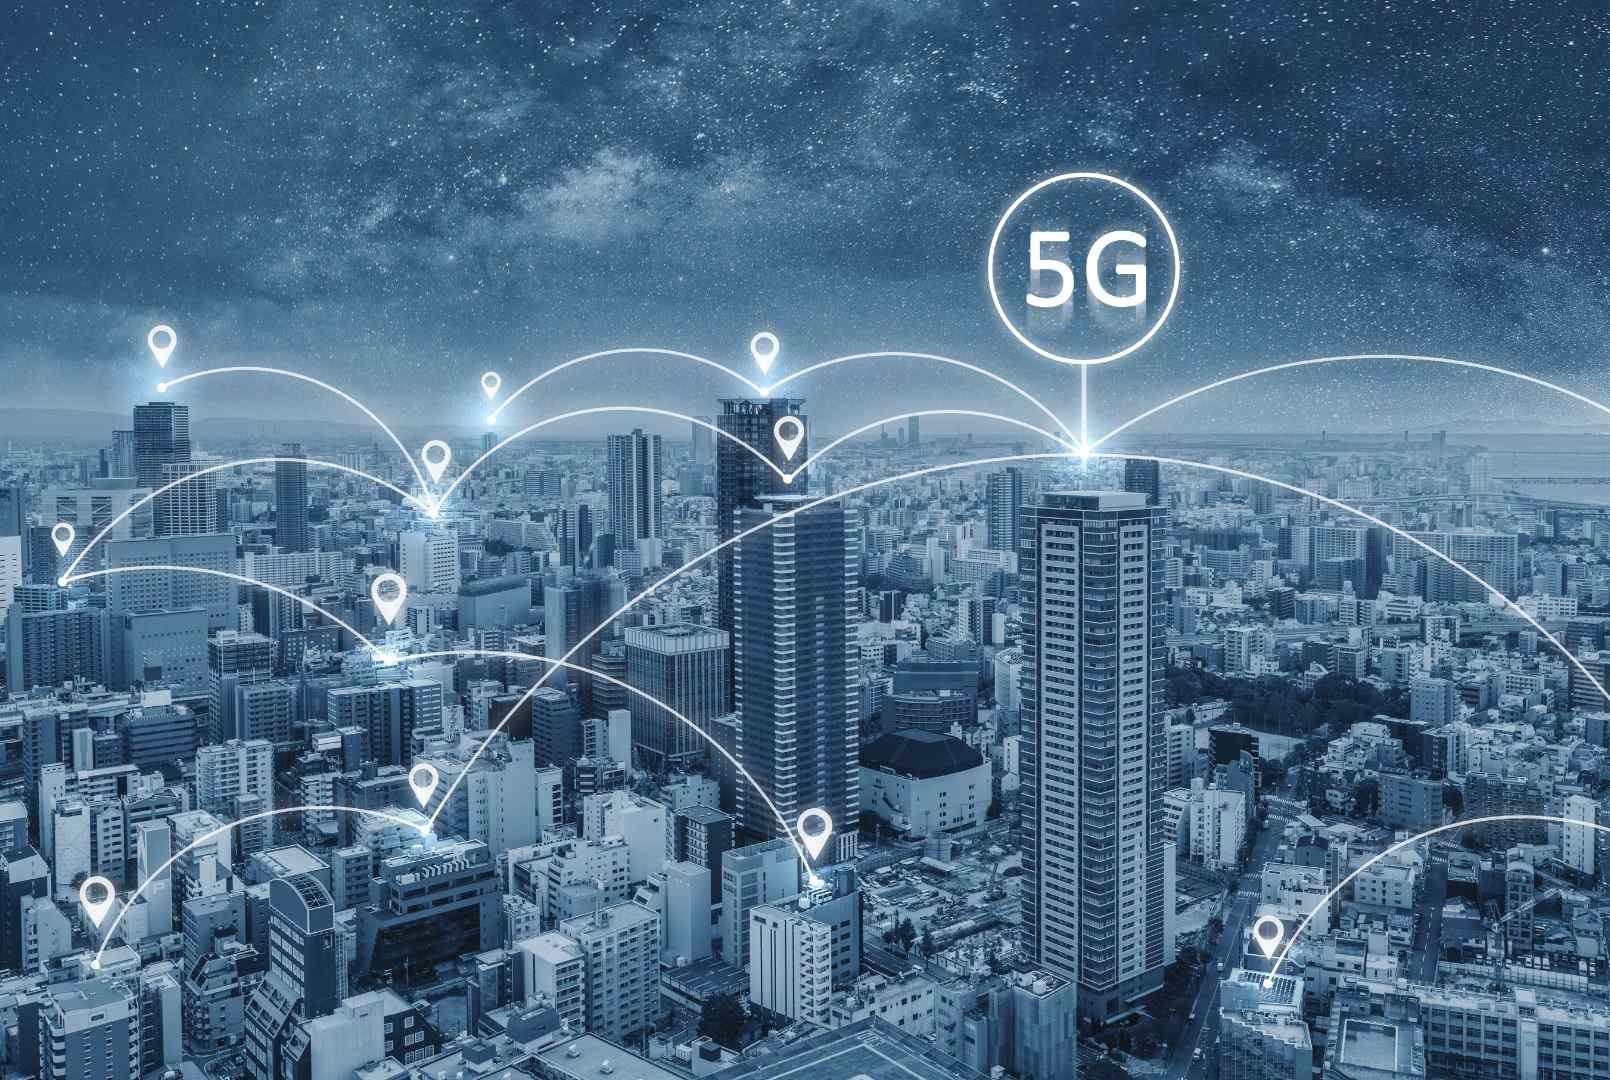 La conexión 5G permitirá que “el internet de las cosas” se potencie, pero llevará tiempo implementarla.